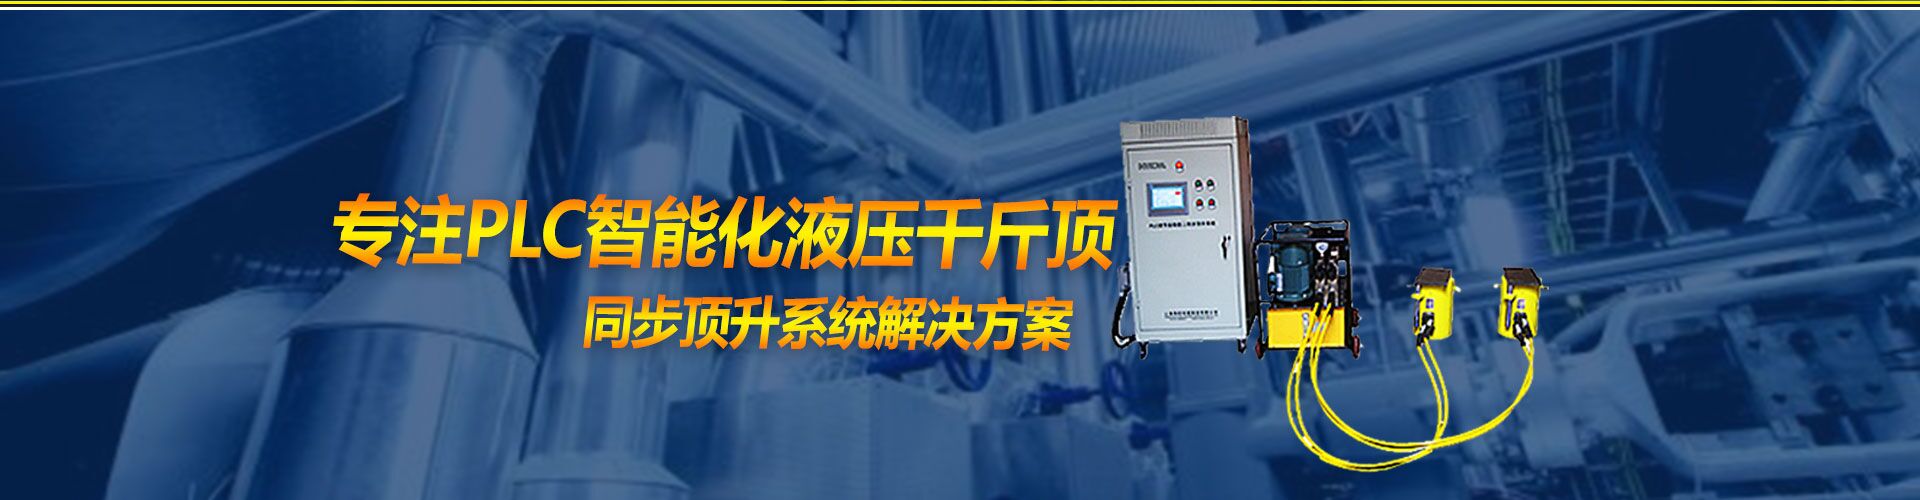 上海海塔機械制造有限公司